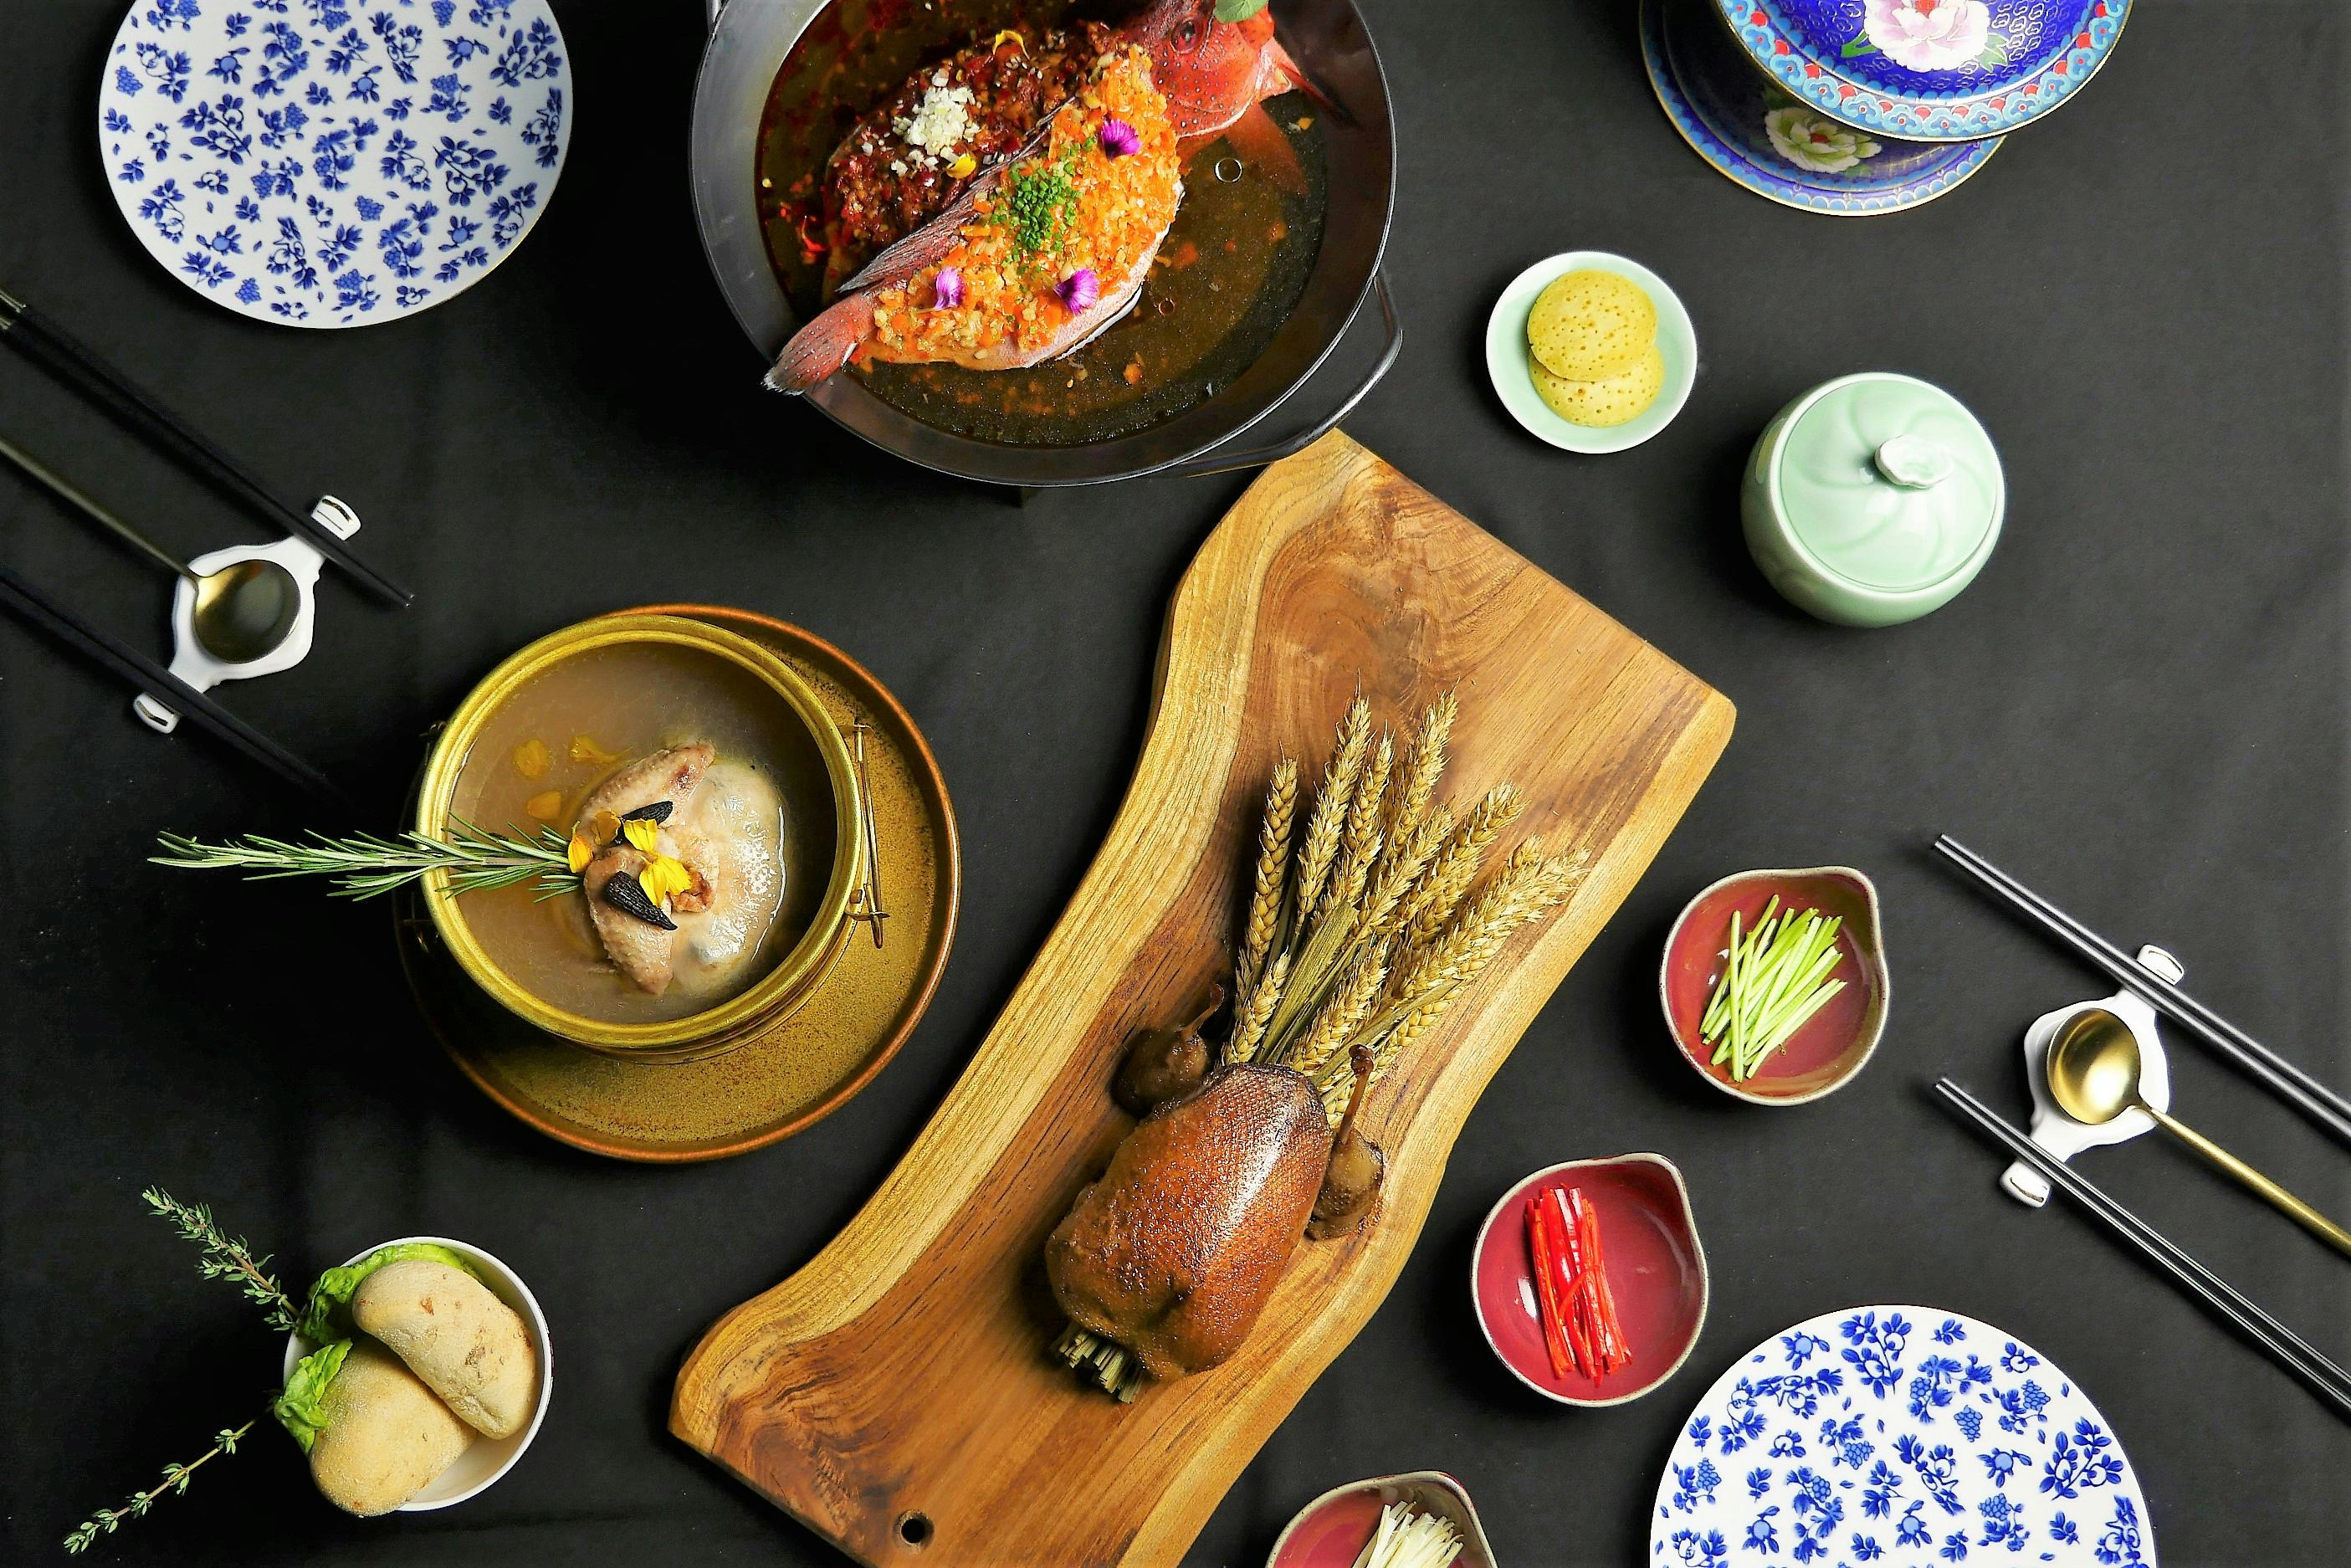 Restaurant Zheng serveert Chinese gerechten op traditionele en ceremoniële wijze